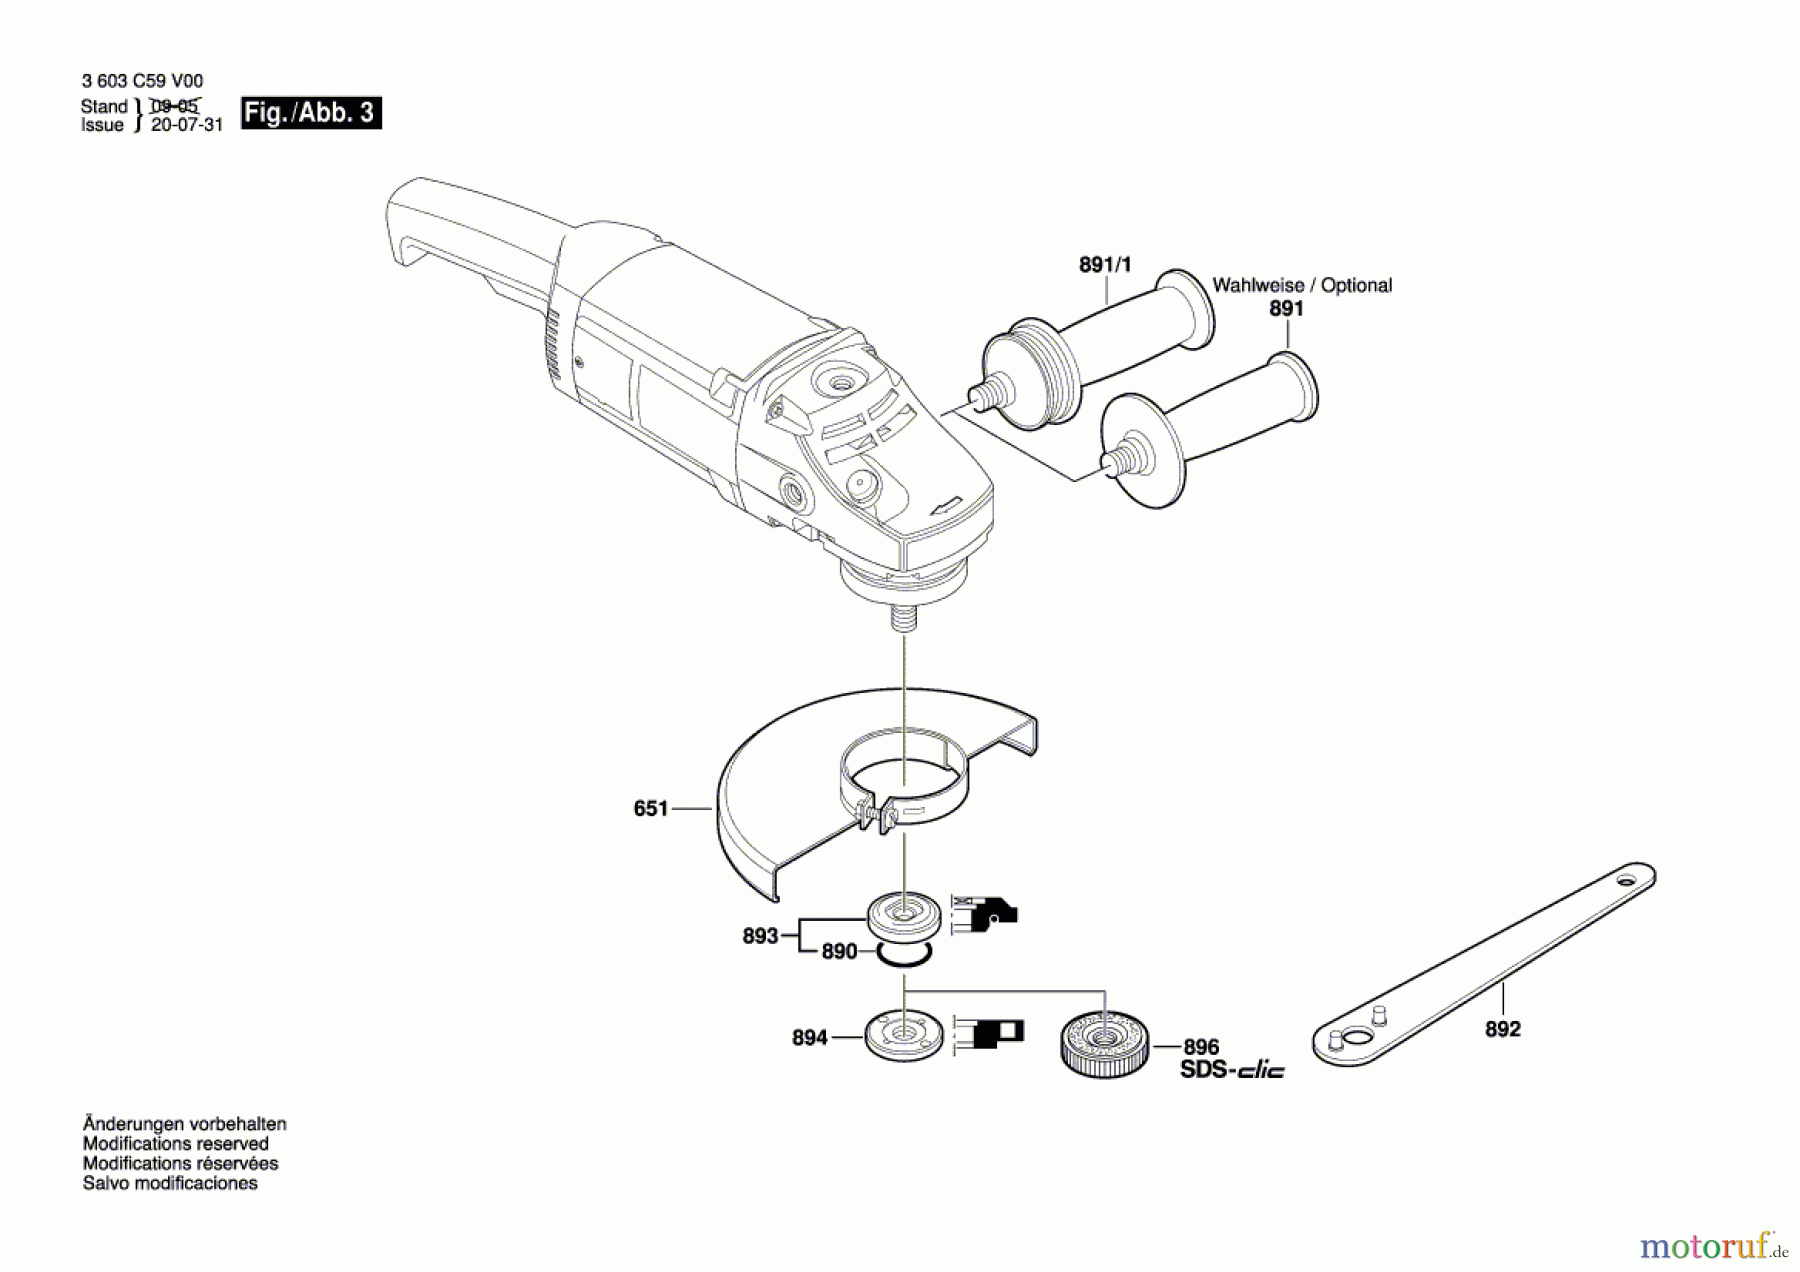  Bosch Werkzeug Winkelschleifer PWS 20-230 J Seite 3